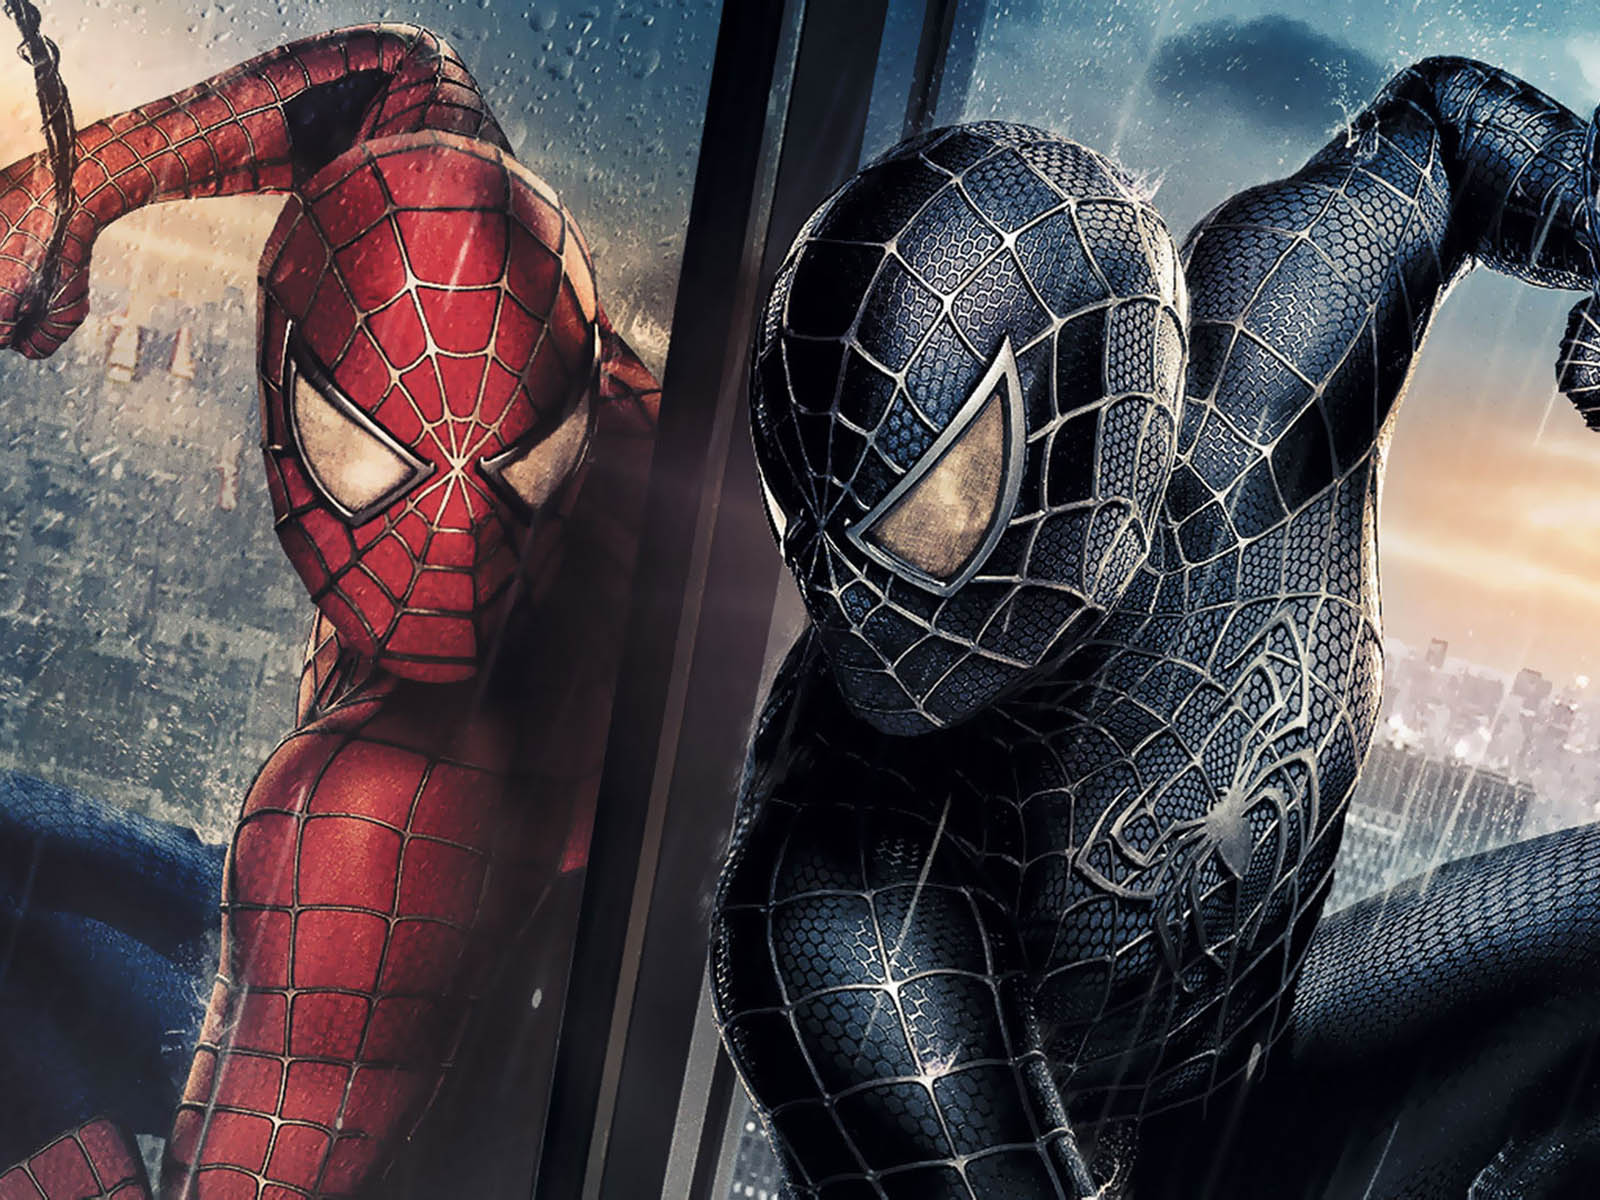 49+] Spiderman 3 Wallpapers Free Download - WallpaperSafari